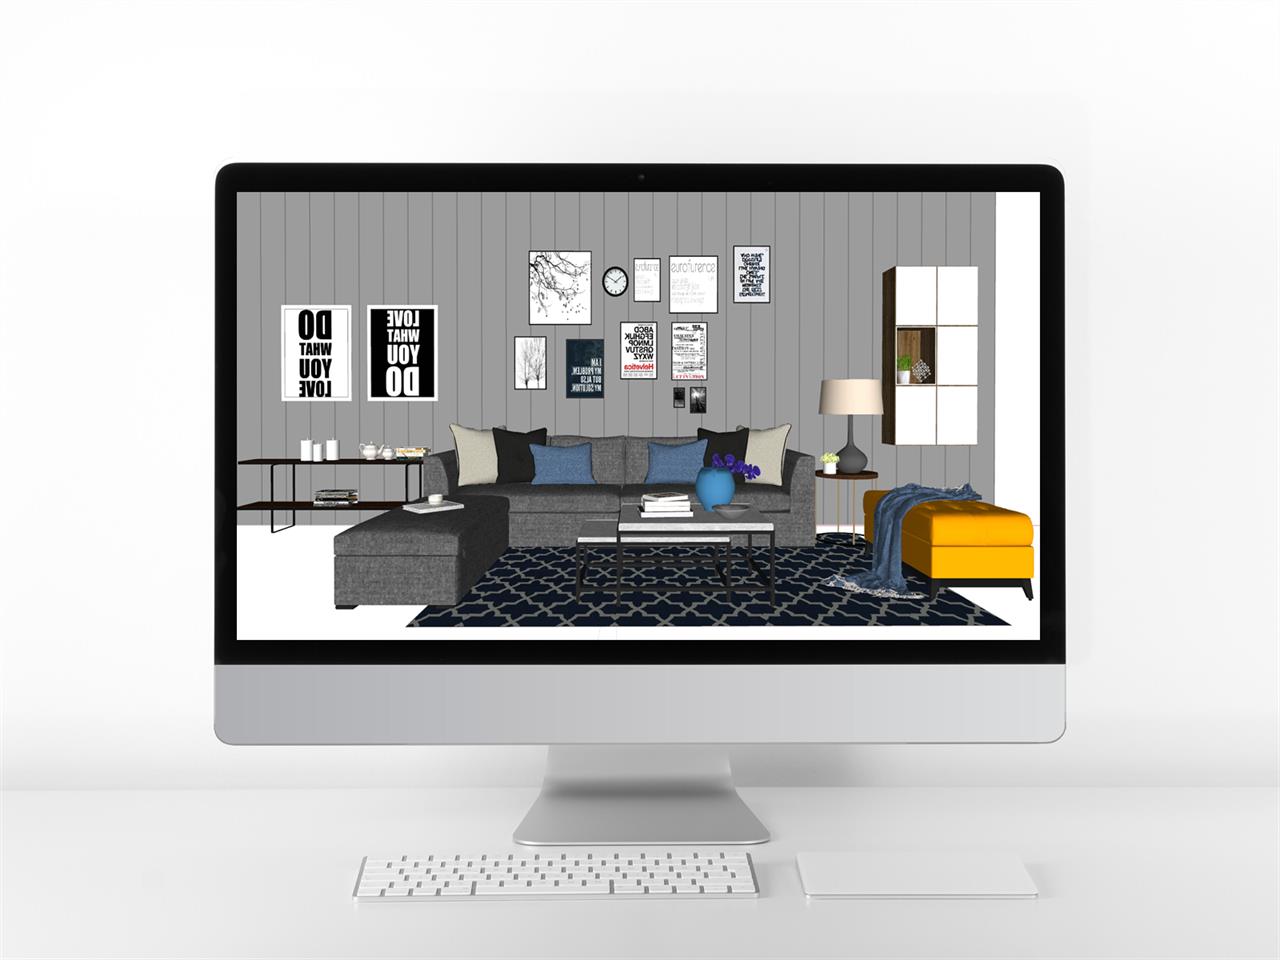 단조로운 거실 디자인 웹툰배경 모델 제작 미리보기